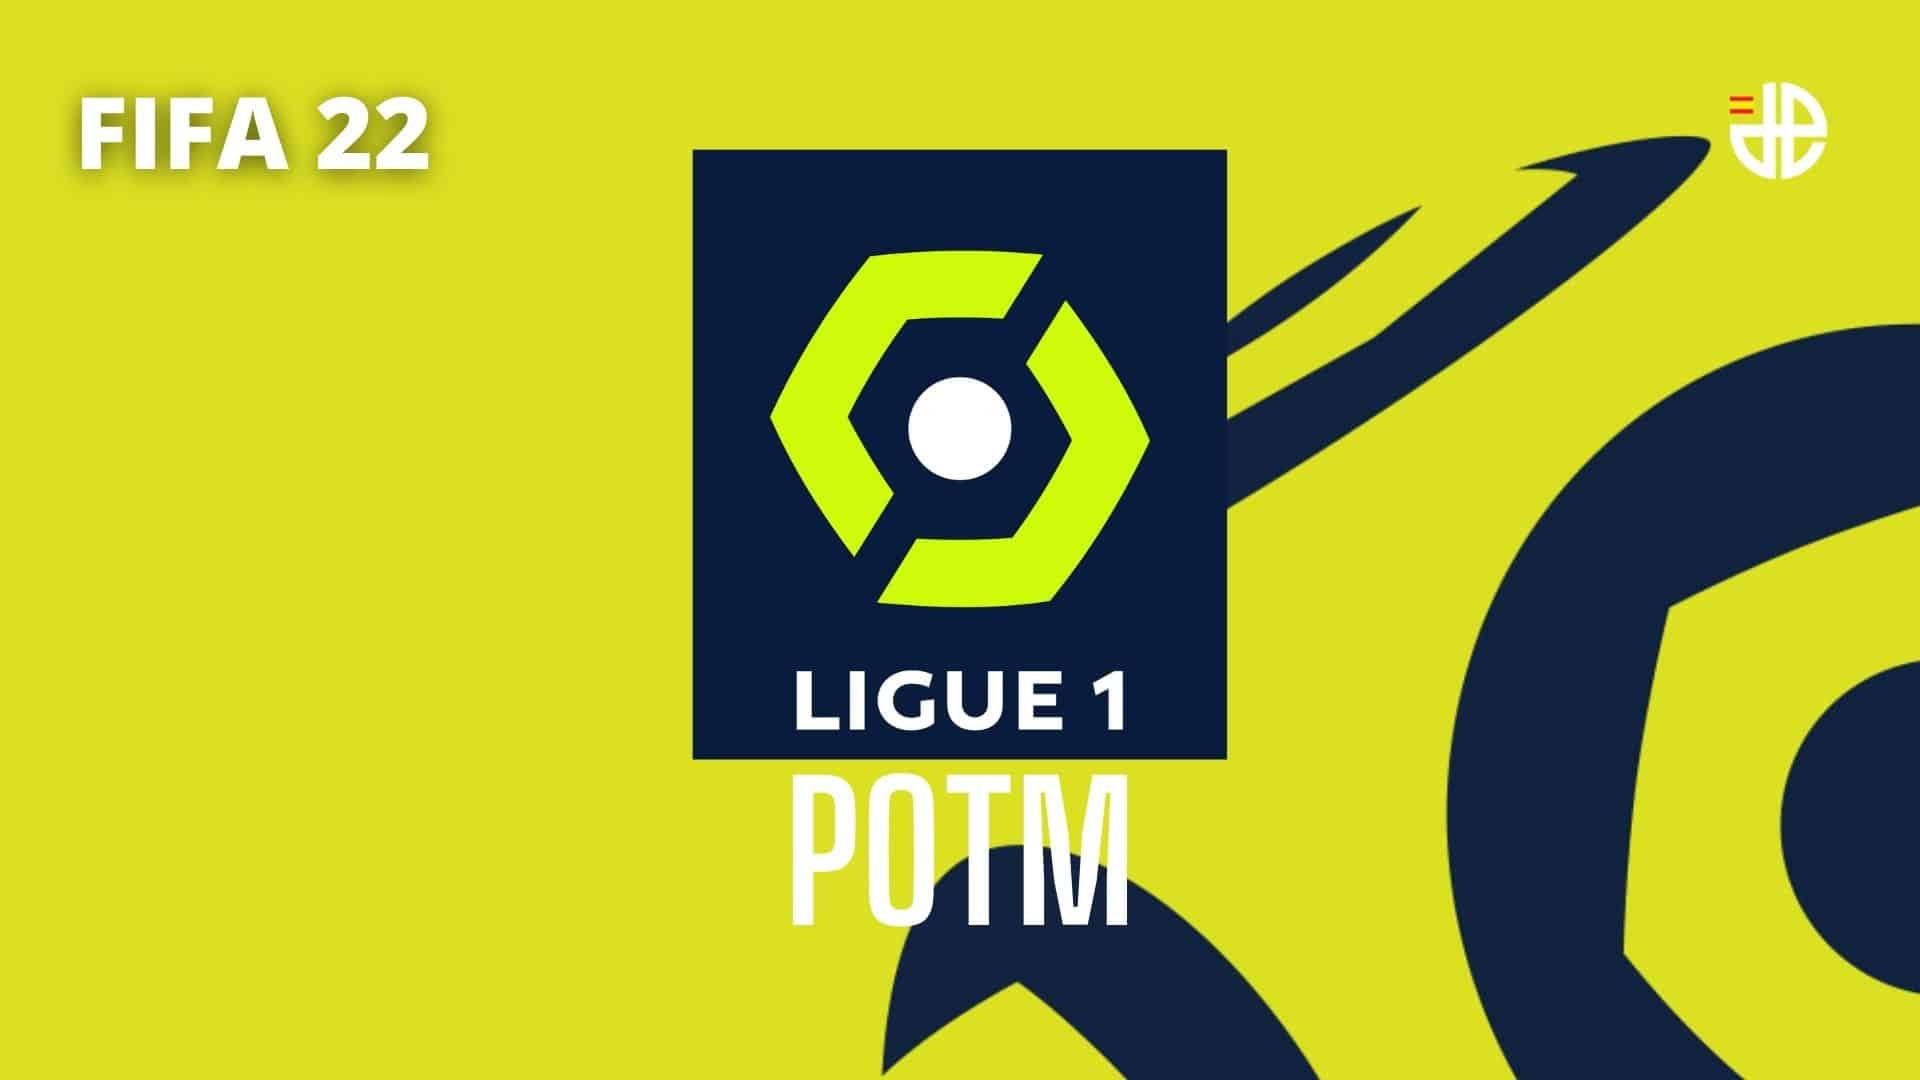 FIFA 22 POTM Ligue 1